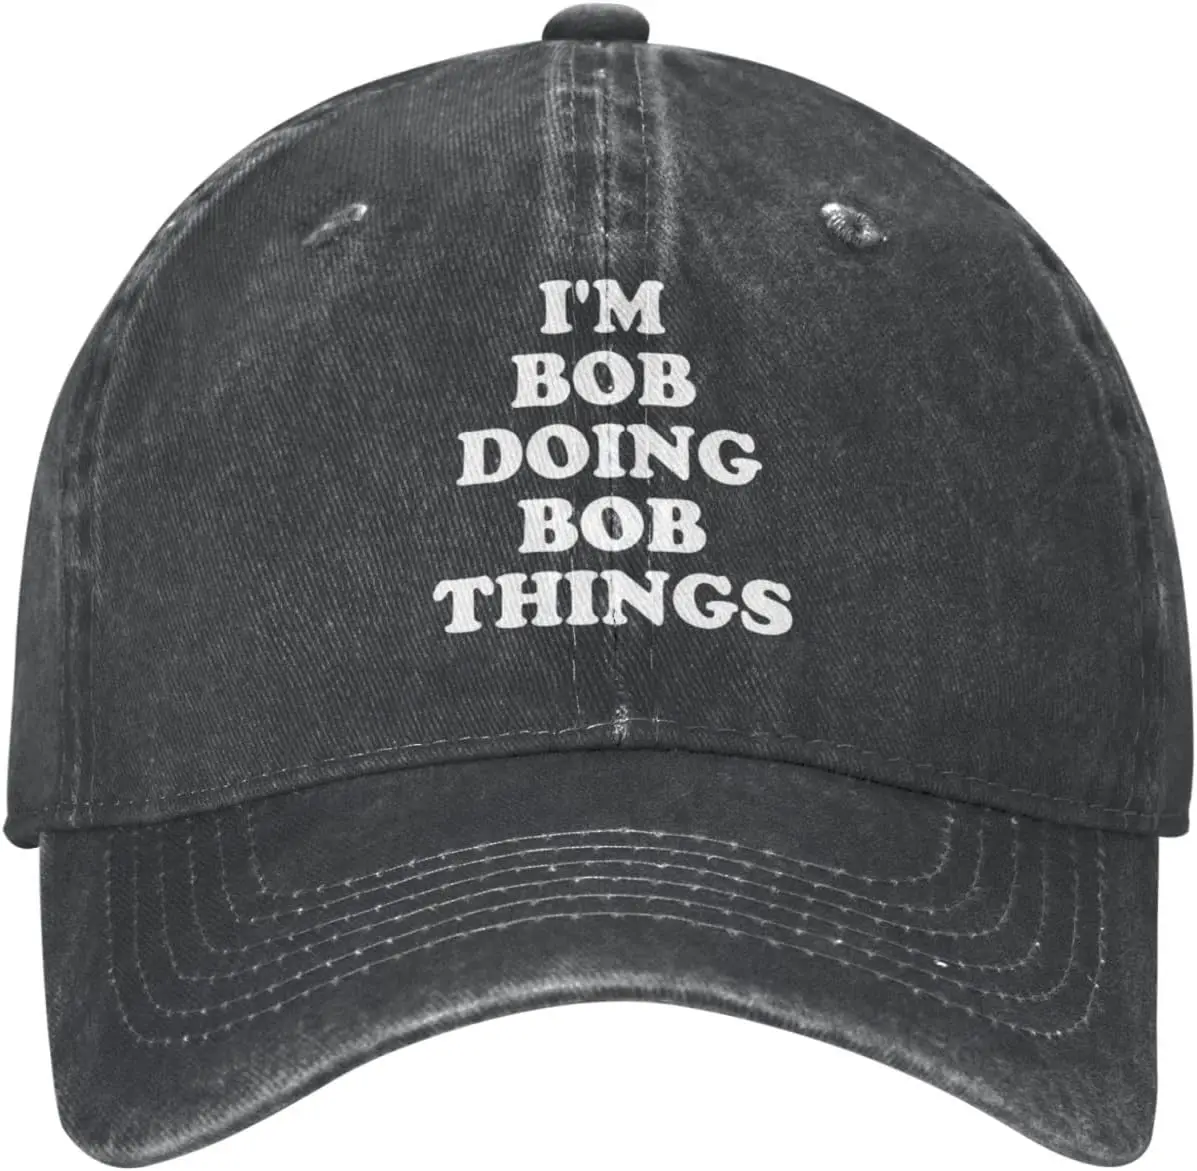 

I'm Bob Doing Bob Things Hat Funny Sarcastic Hat Baseball Cap Adjustable Trucker Hats Outdoor Sports Caps